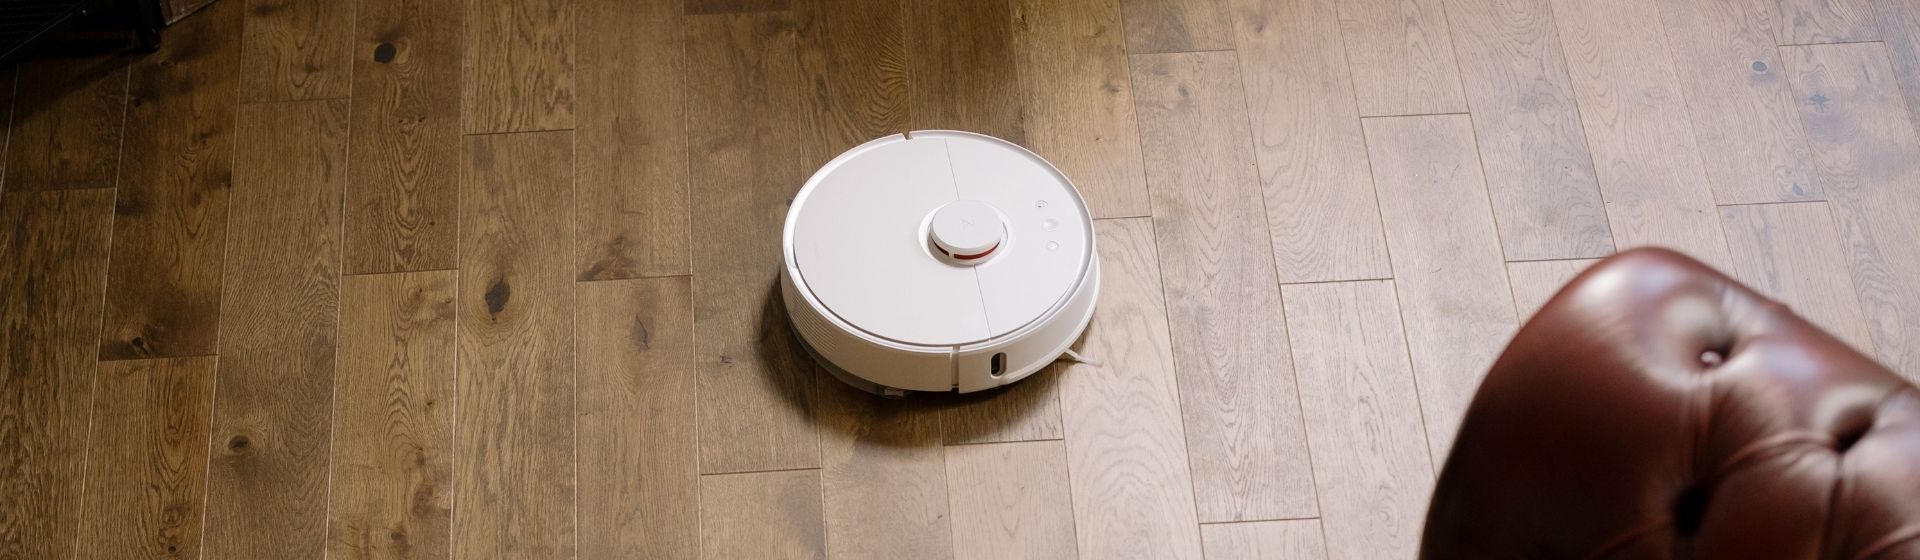 Aspirador de pó robô branco, redondo, no chão de madeira